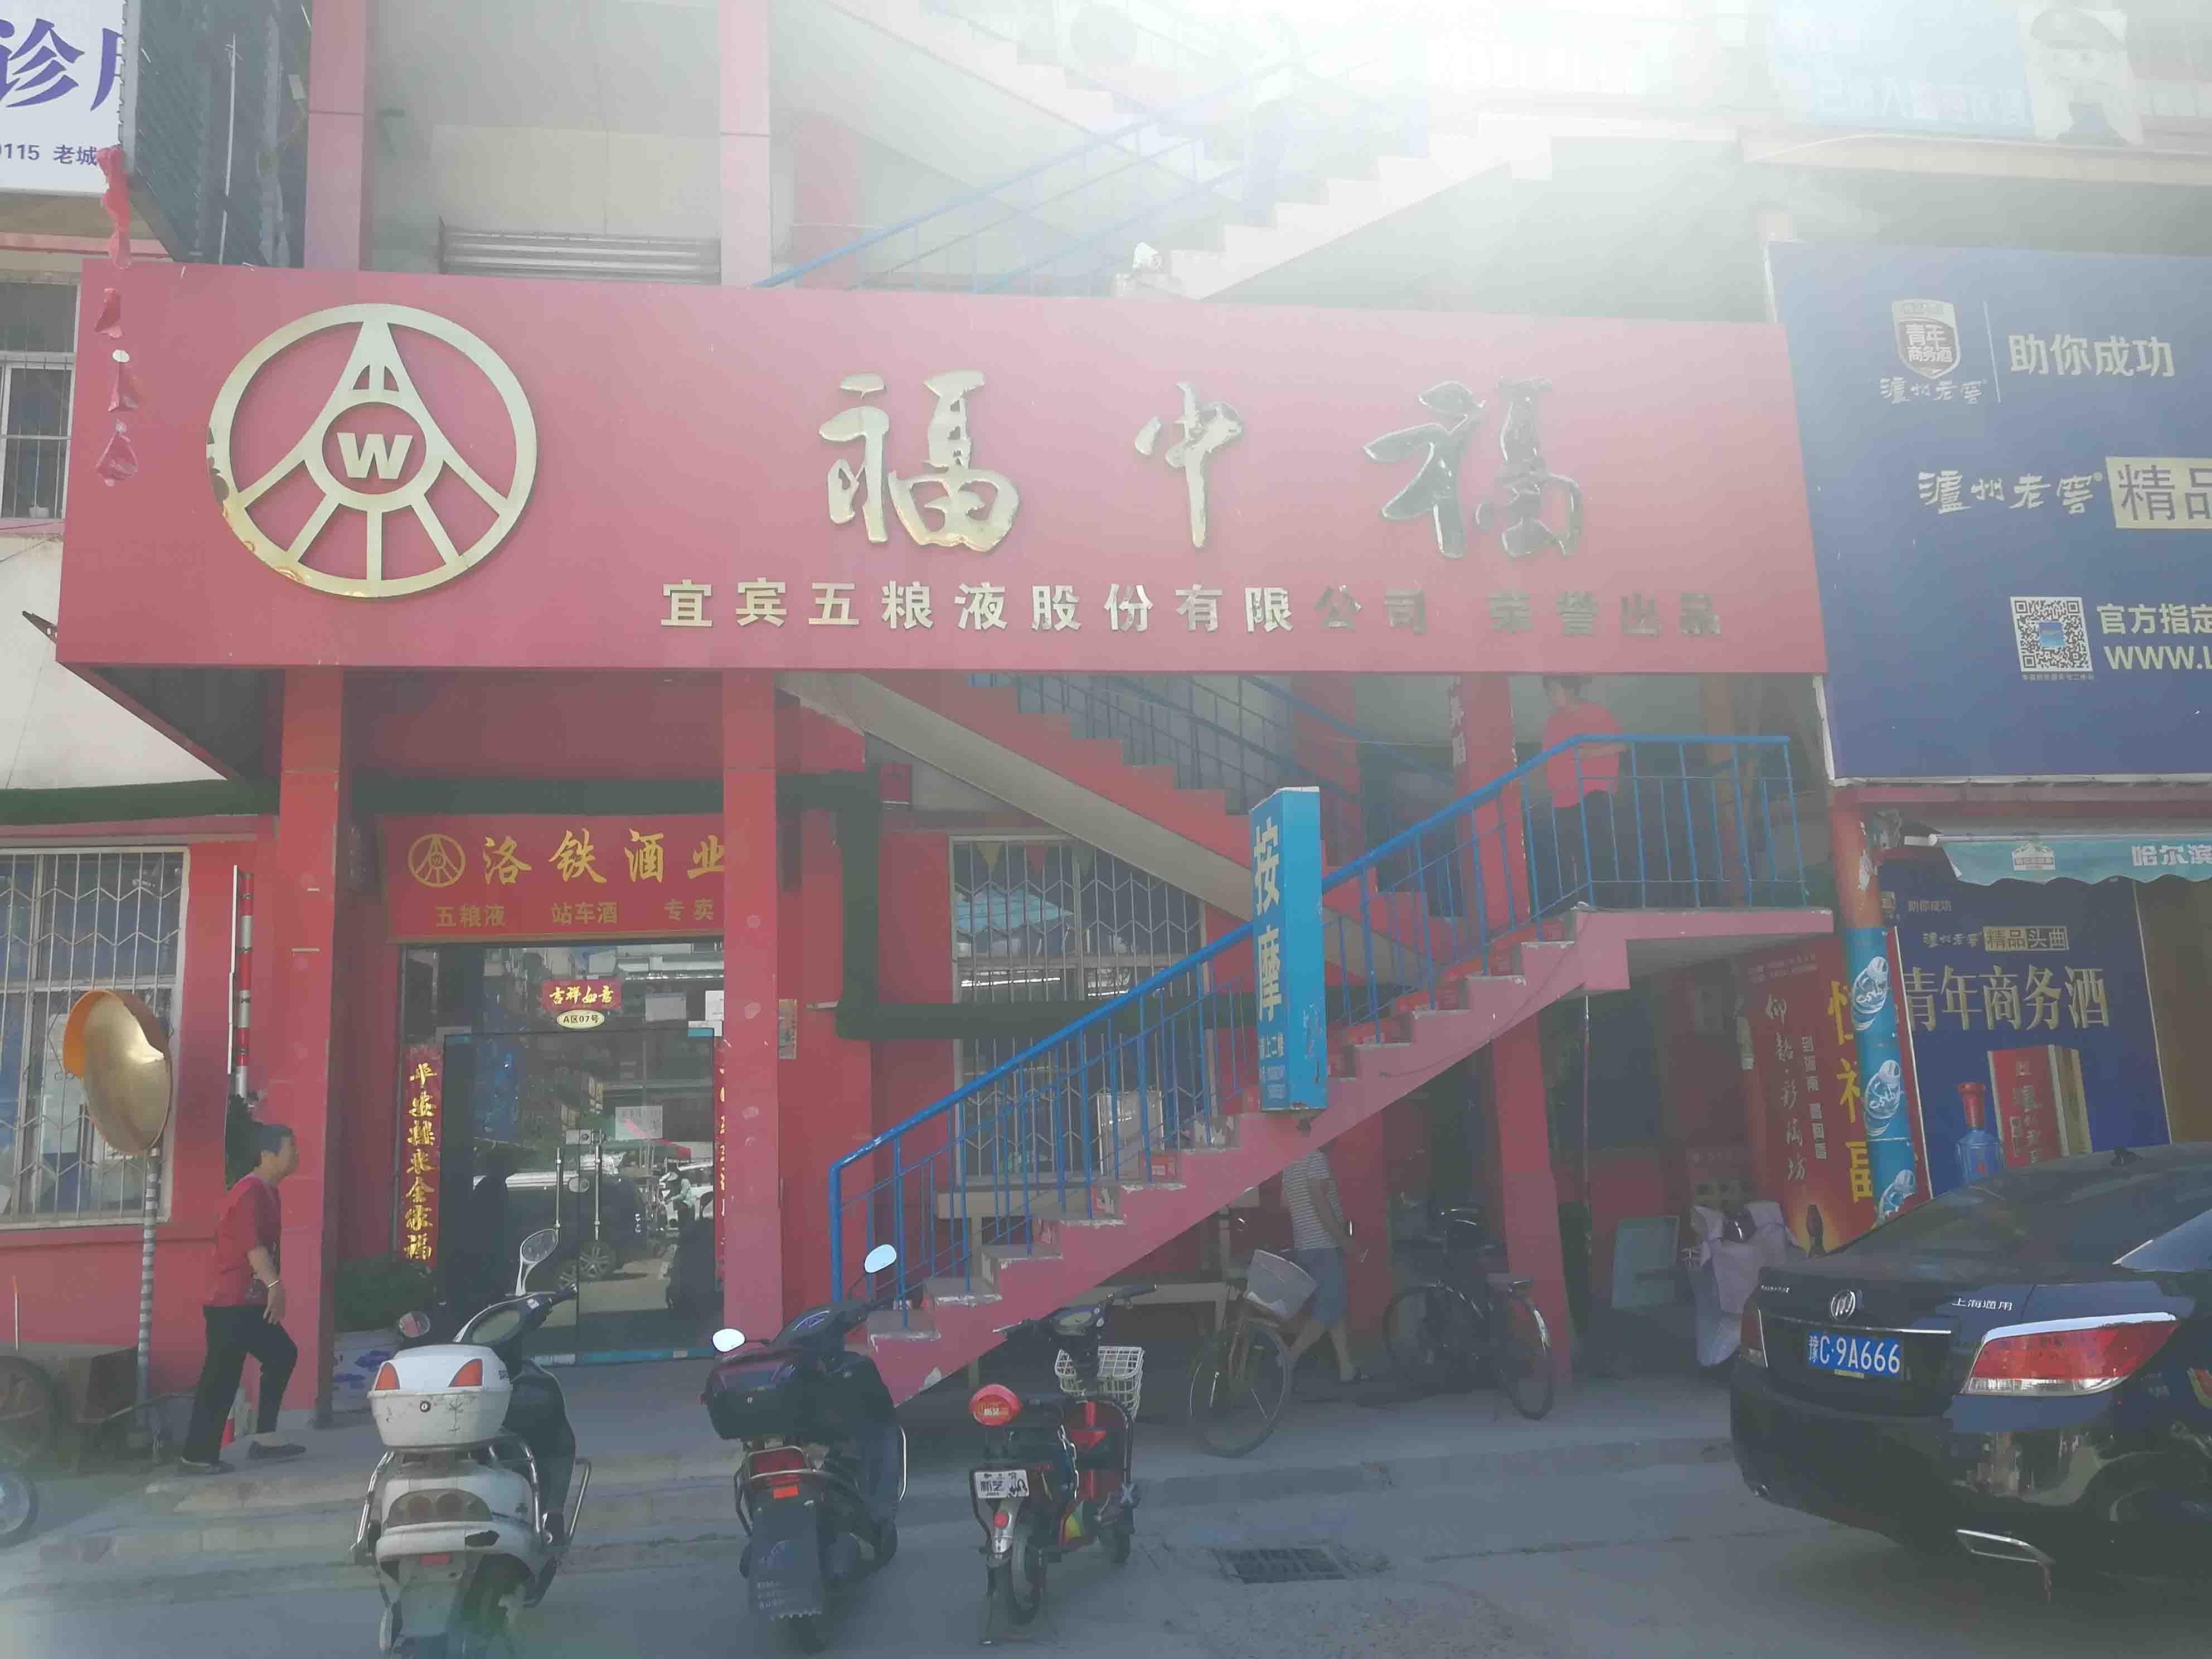 上海市场步行街洛阳商业地产出租服务，提供舞蹈的商铺和写字楼选项。无论您是企业还是成熟企业，我们的列表都能满足您的需求